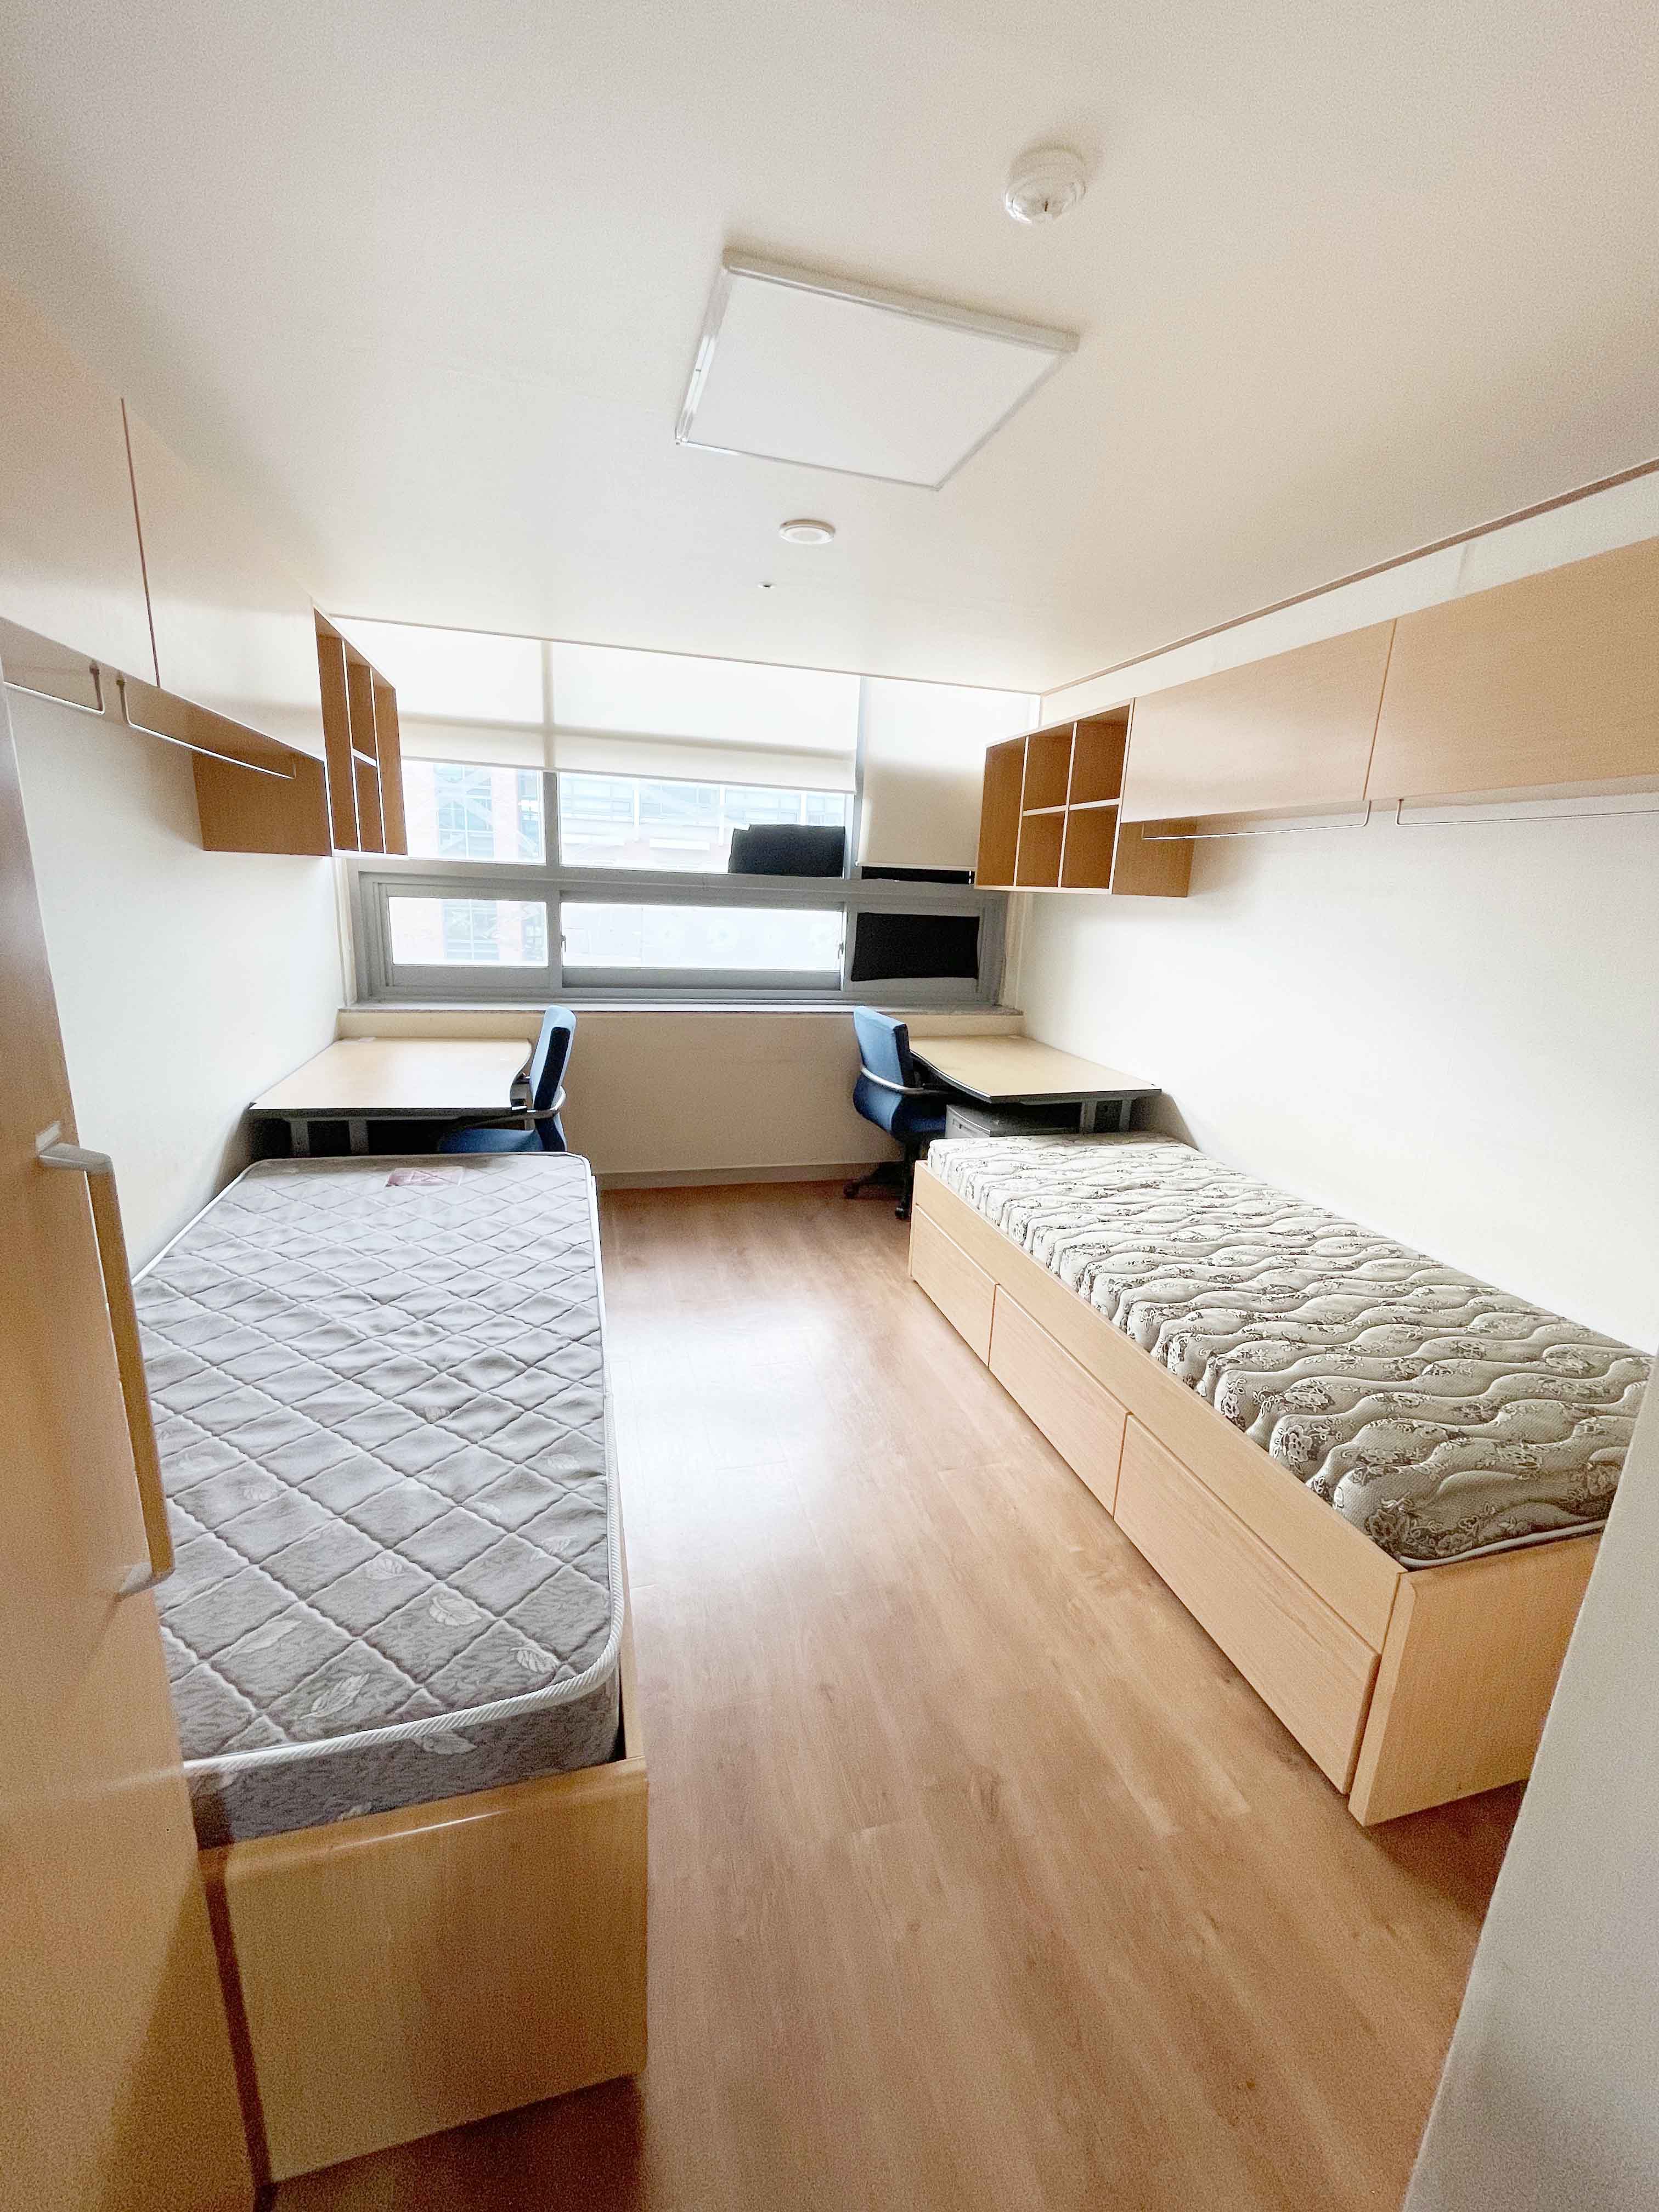 Bedroom in student dorm in Gwangju, Korea.